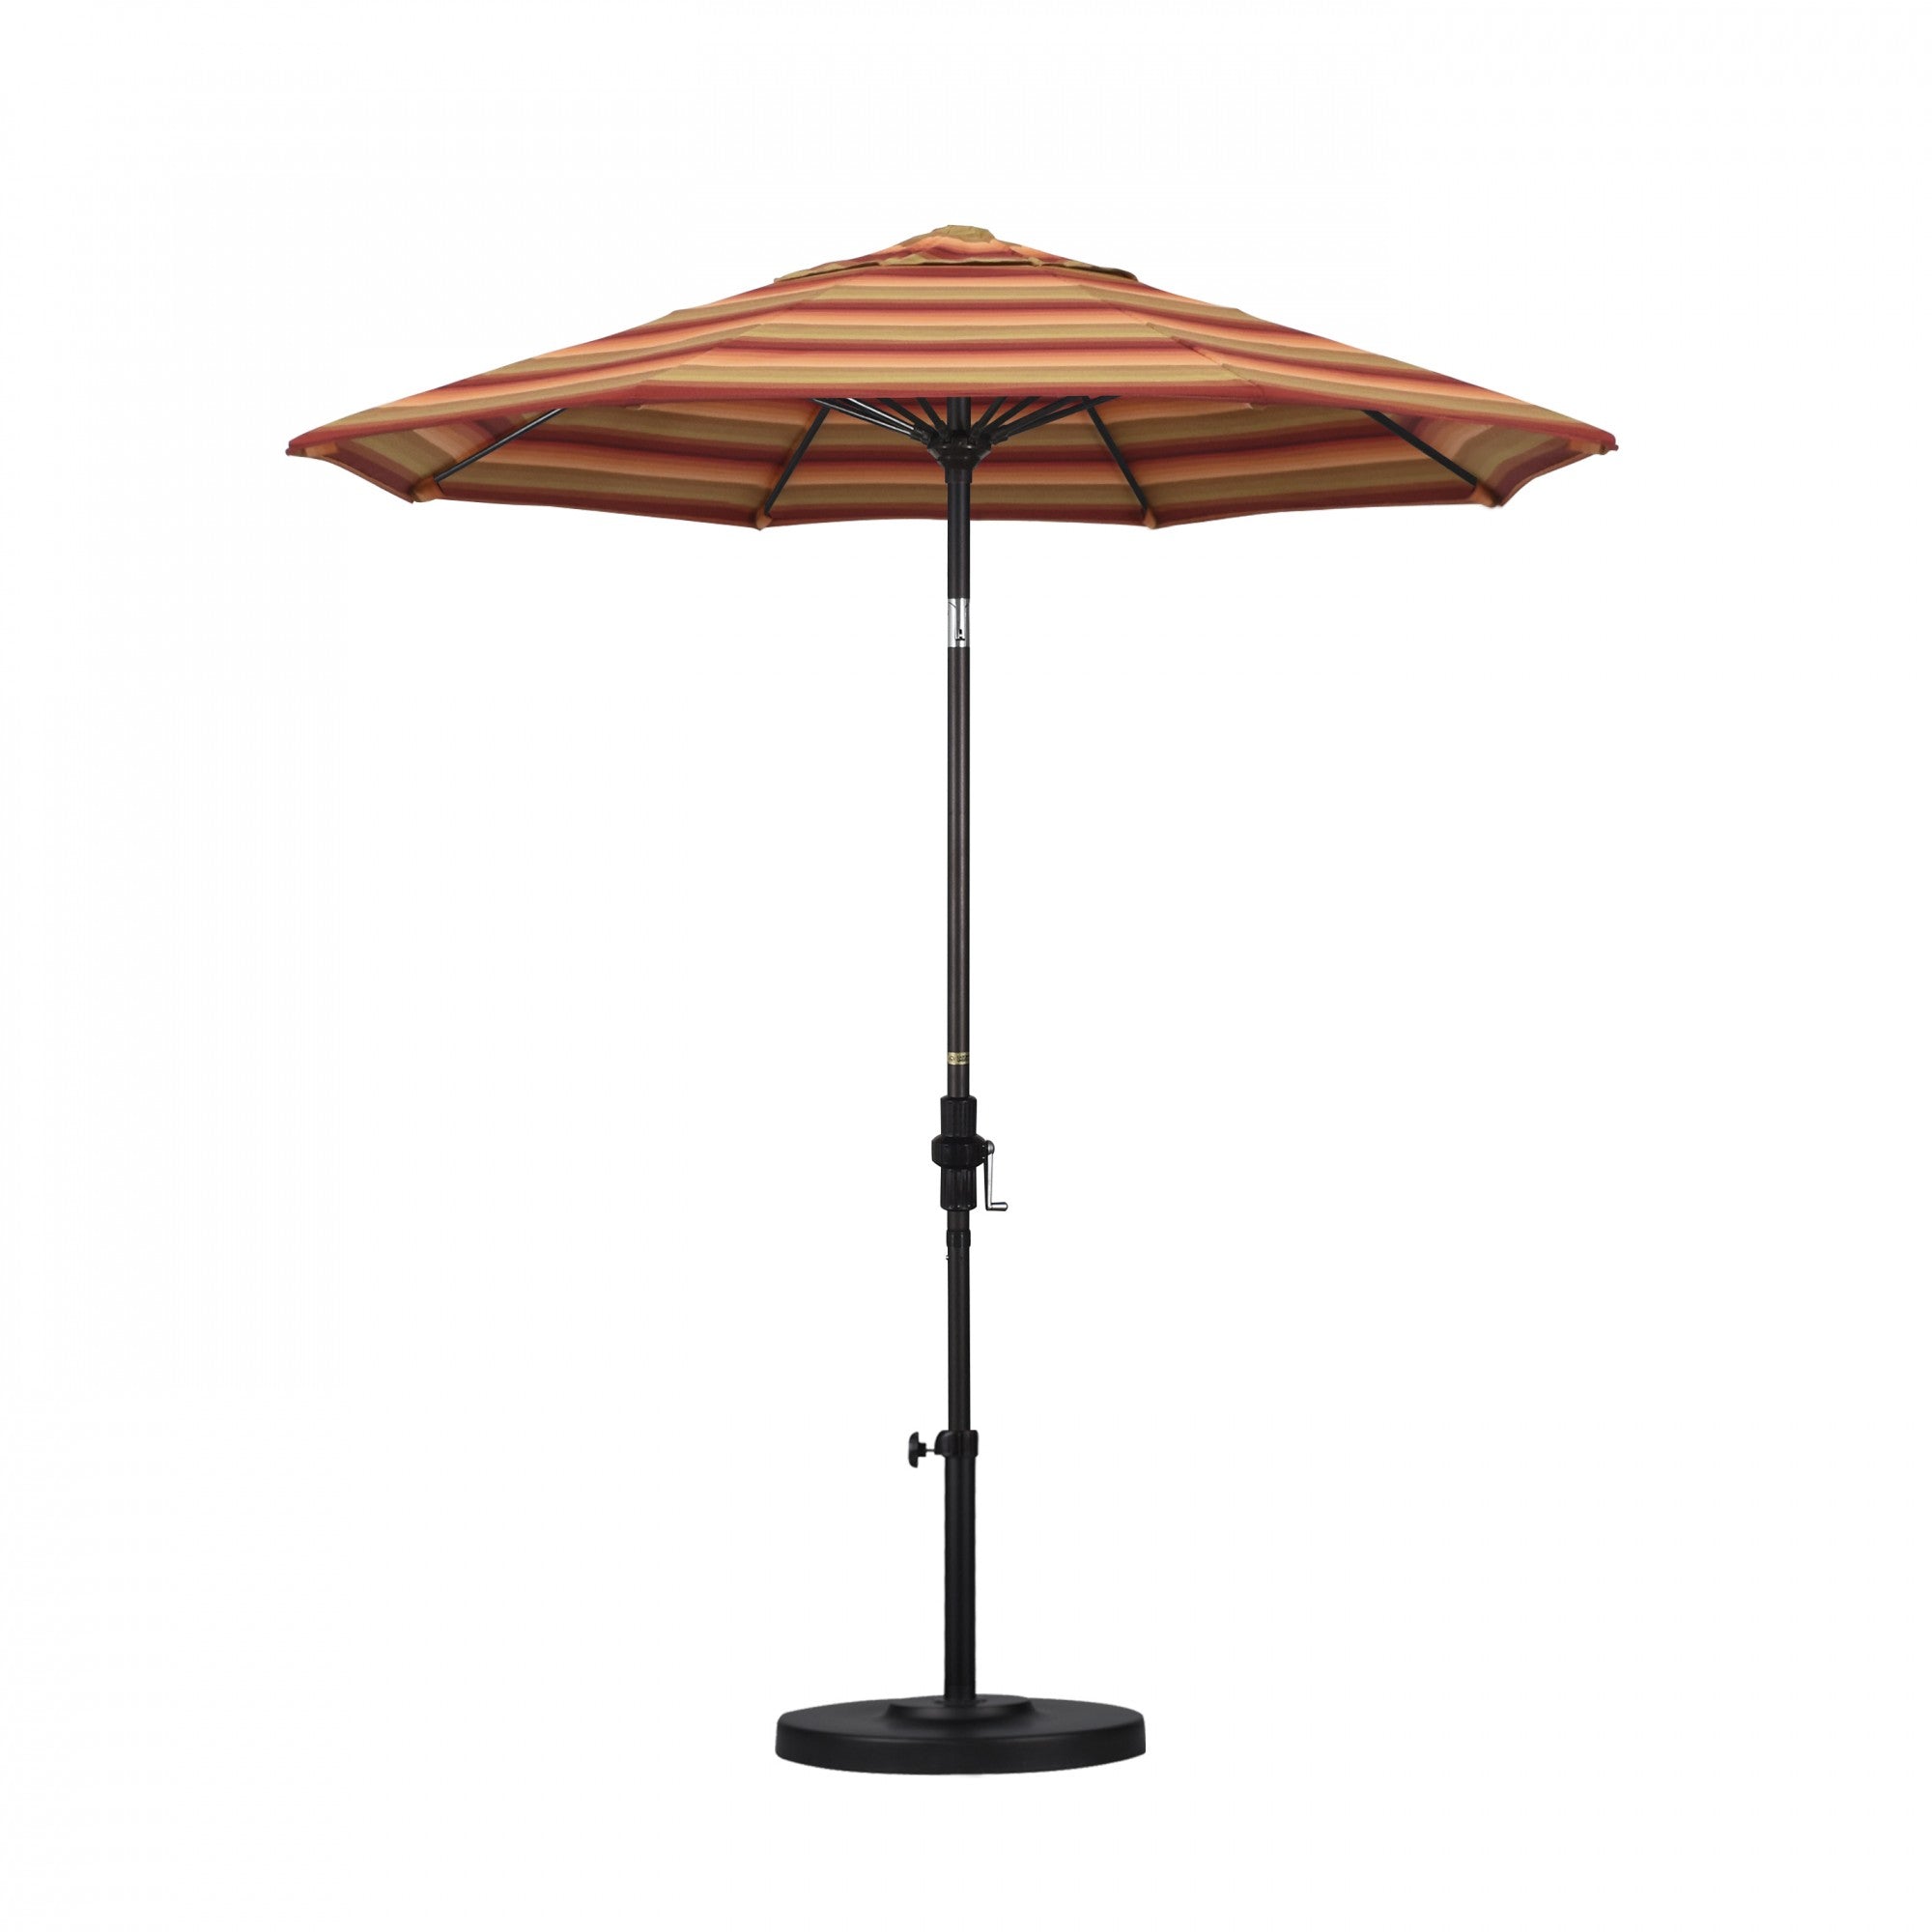 California Umbrella - 7.5' - Patio Umbrella Umbrella - Aluminum Pole - Astoria Sunset - Sunbrella  - GSCUF758117-56095